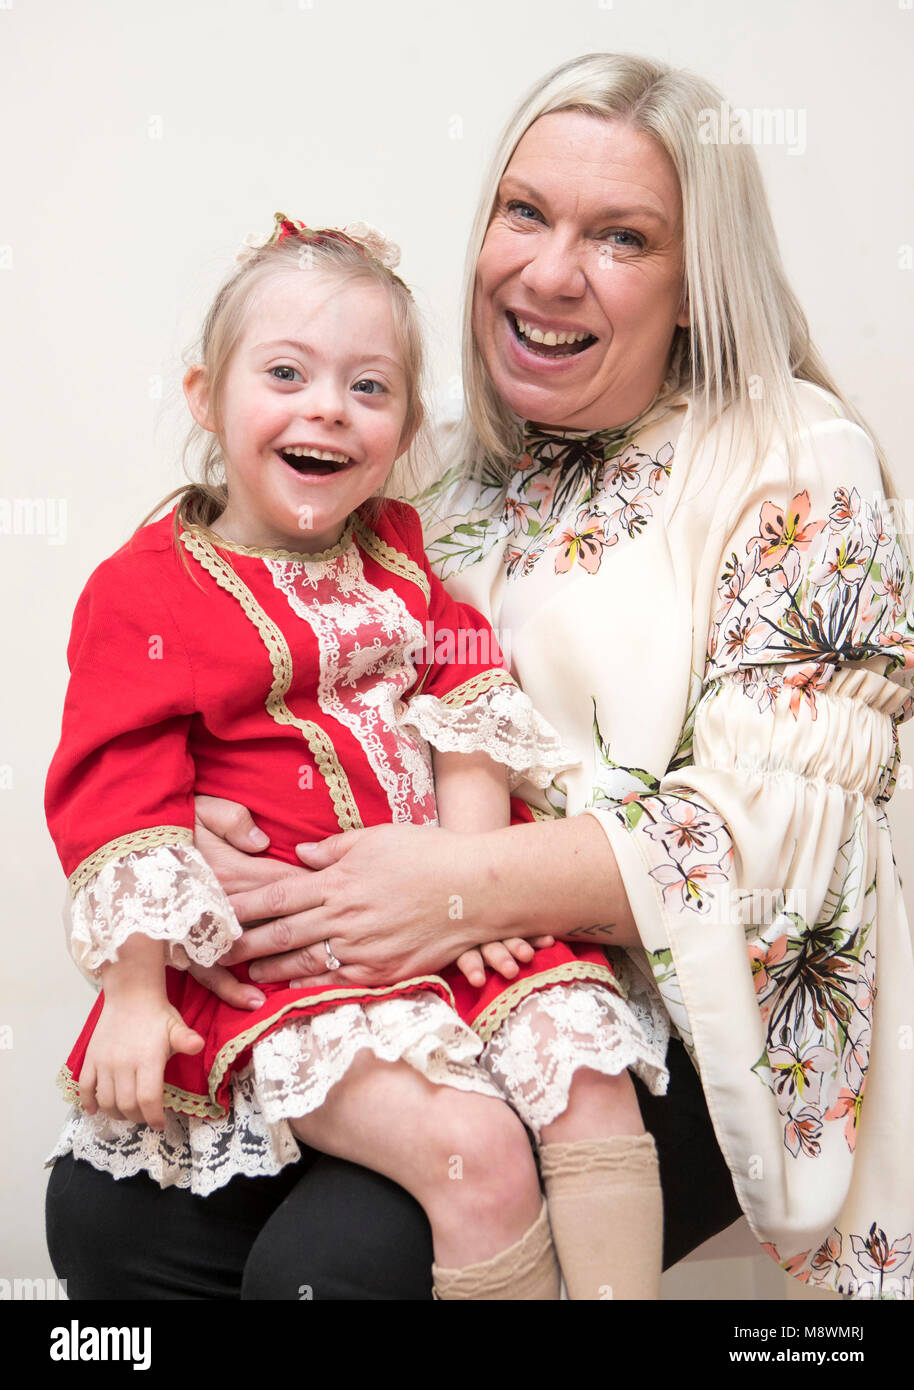 Julie Britton mit ihrer Tochter Connie-Rose Seabourne Wer hat Down-syndrom, an ihrem Haus in Leeds, nachdem sie auf einer James Corden Fahrgemeinschaft karaoke Video, das virale mit über einer Million von Ansichten gegangen ist gesichert. Stockfoto